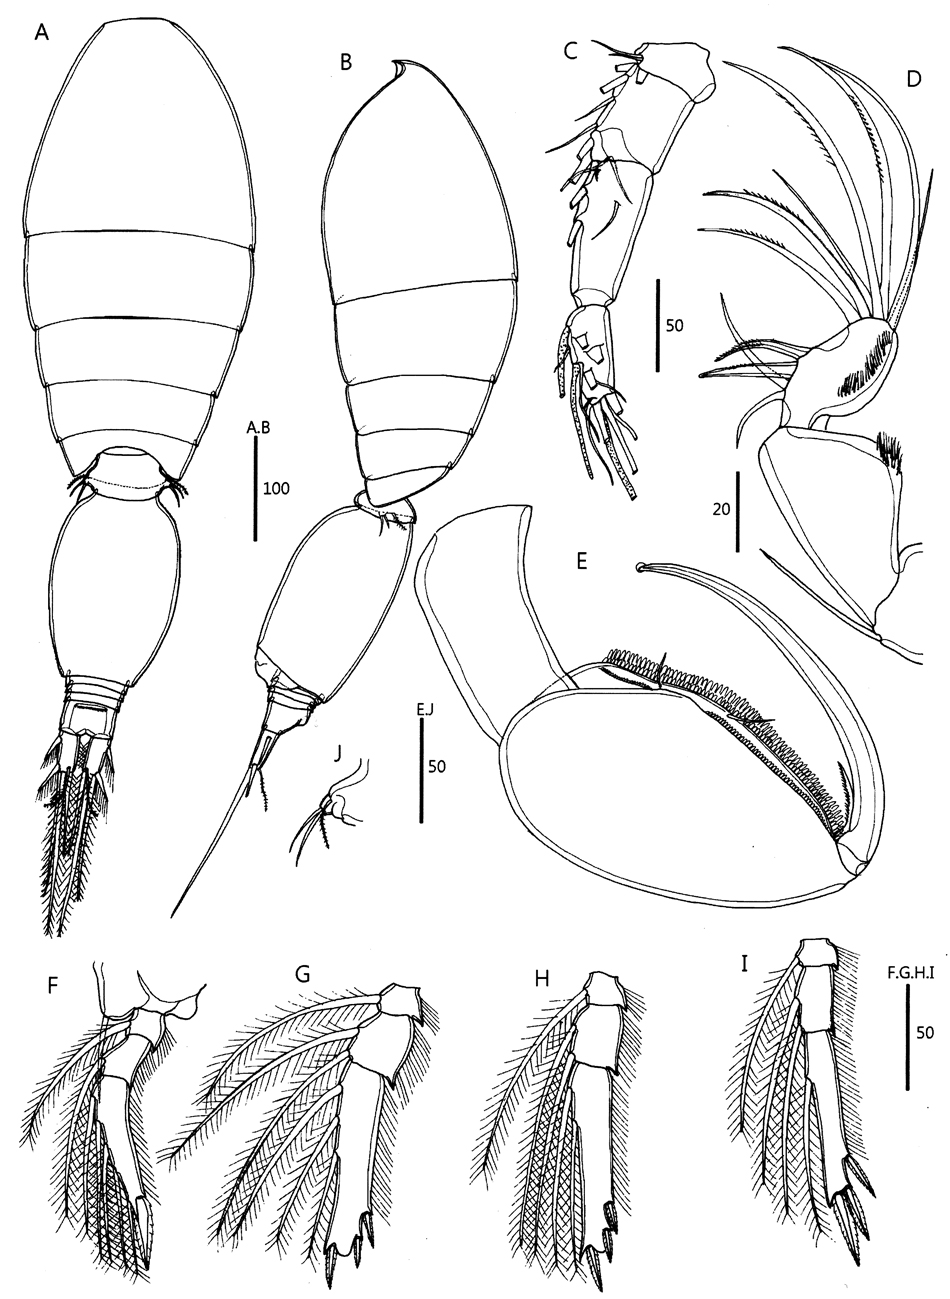 Espèce Oncaea venusta - Planche 24 de figures morphologiques